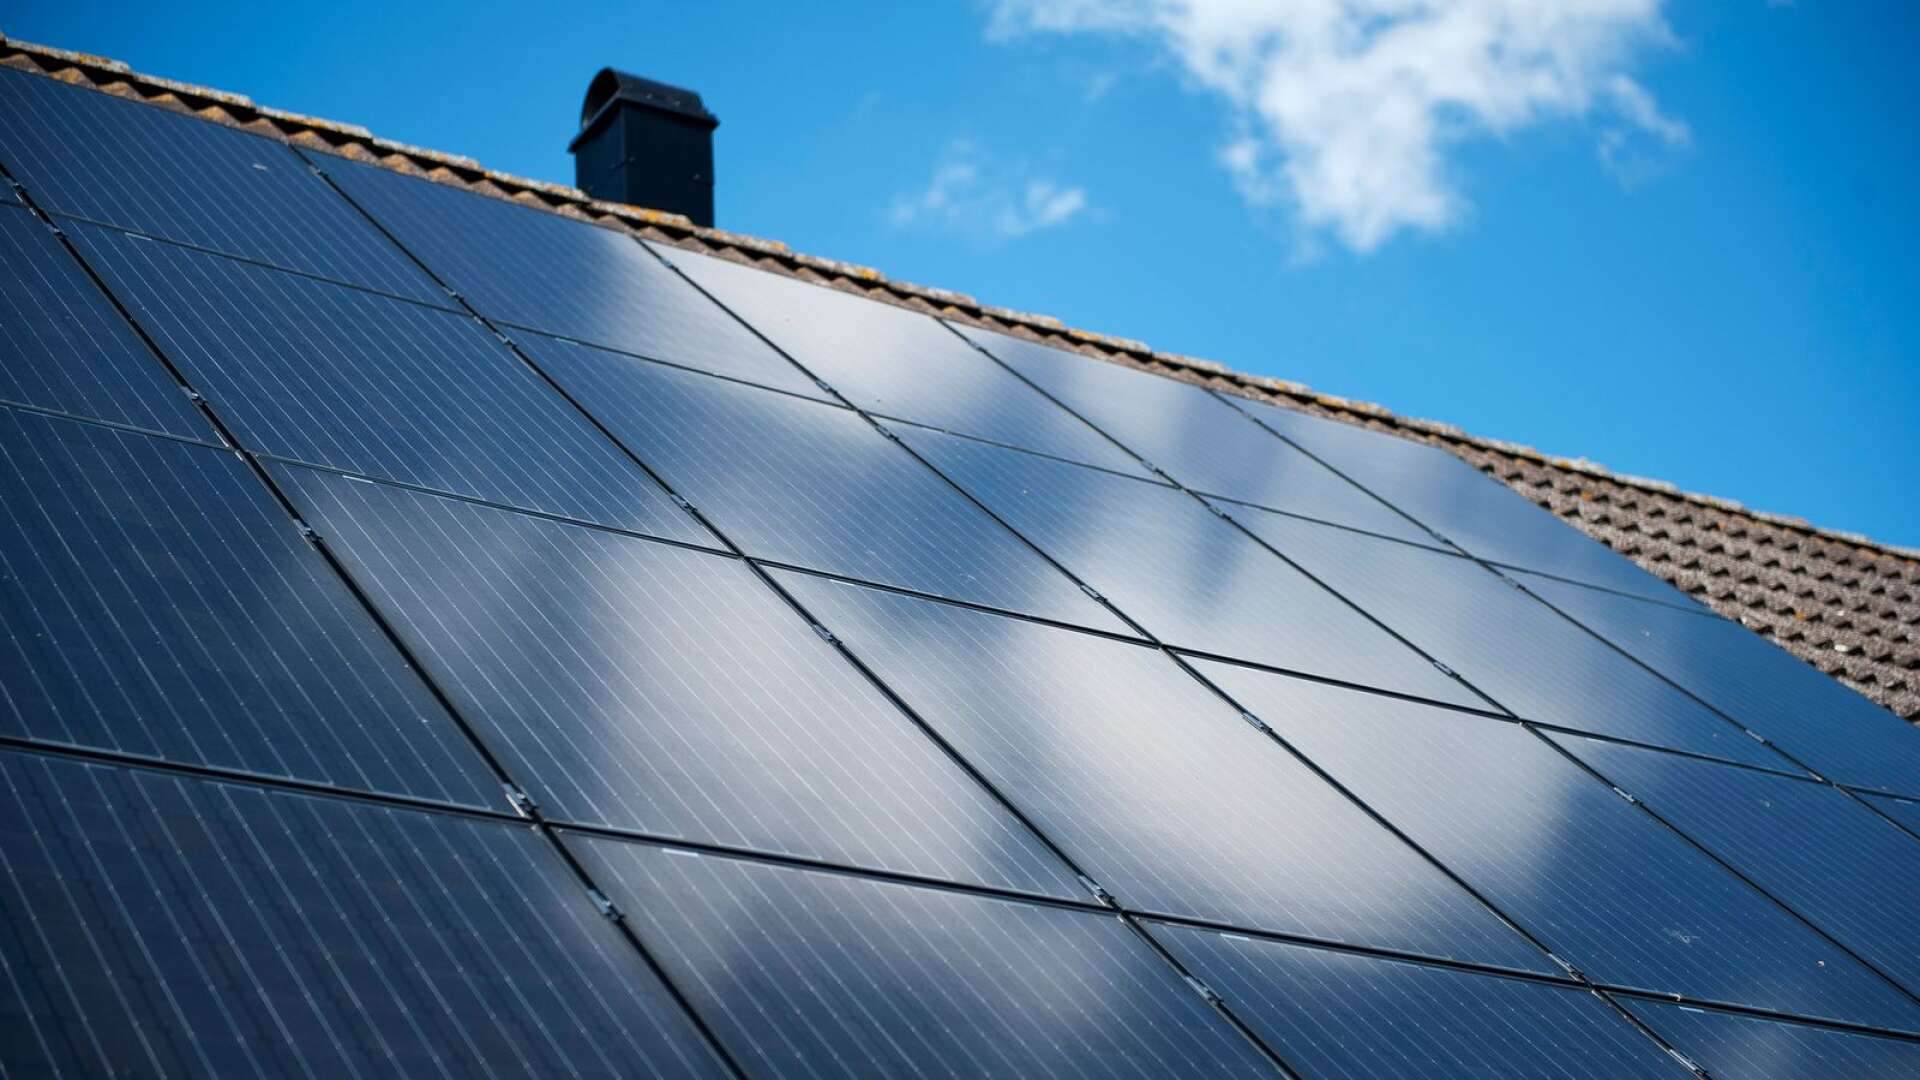 Tack vare det gröna avdraget har nära 63 000 småhusägare vågat ta klivet och under 2021 investerat över fyra miljarder i grön teknik, det vill säga solceller, laddare och batterier, skriver Anna Werner.